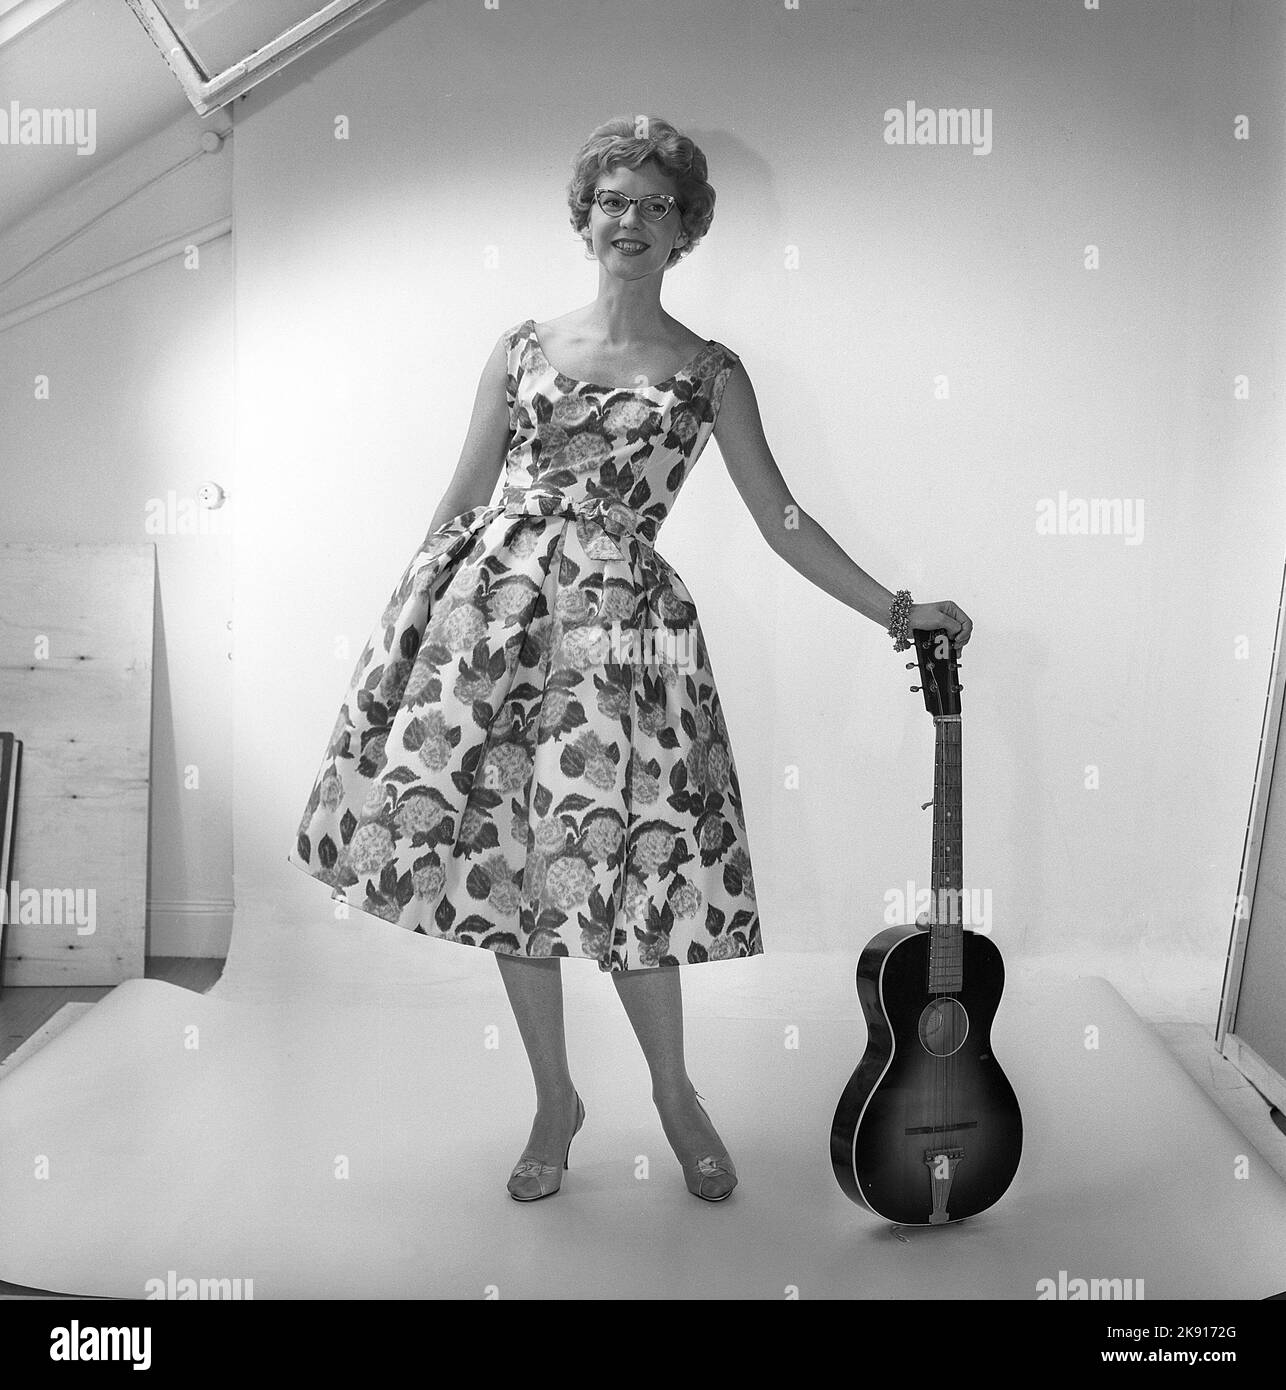 Dans le 1950s. Une femme dans le studio de photographes portant une robe à motifs de fleurs et de feuilles. Suède 1959 Kristoffersson réf. CF58-7 Banque D'Images